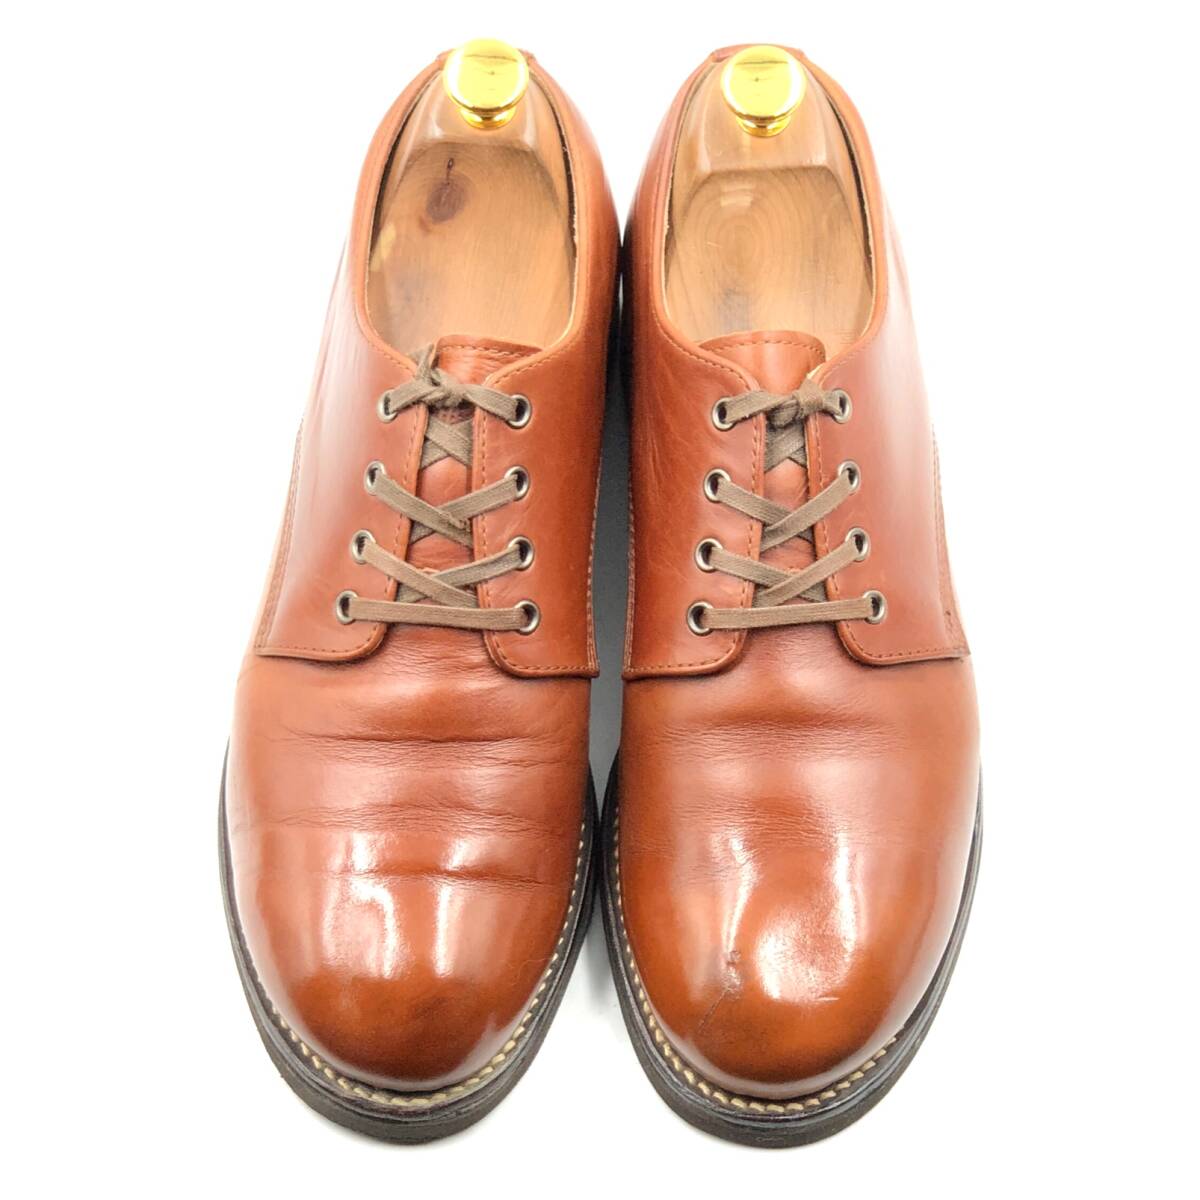 即決 Danner ダナー 27cm 9 D219750 メンズ レザーシューズ プレーントゥ 茶 ブラウン 革靴 皮靴 ビジネスシューズ